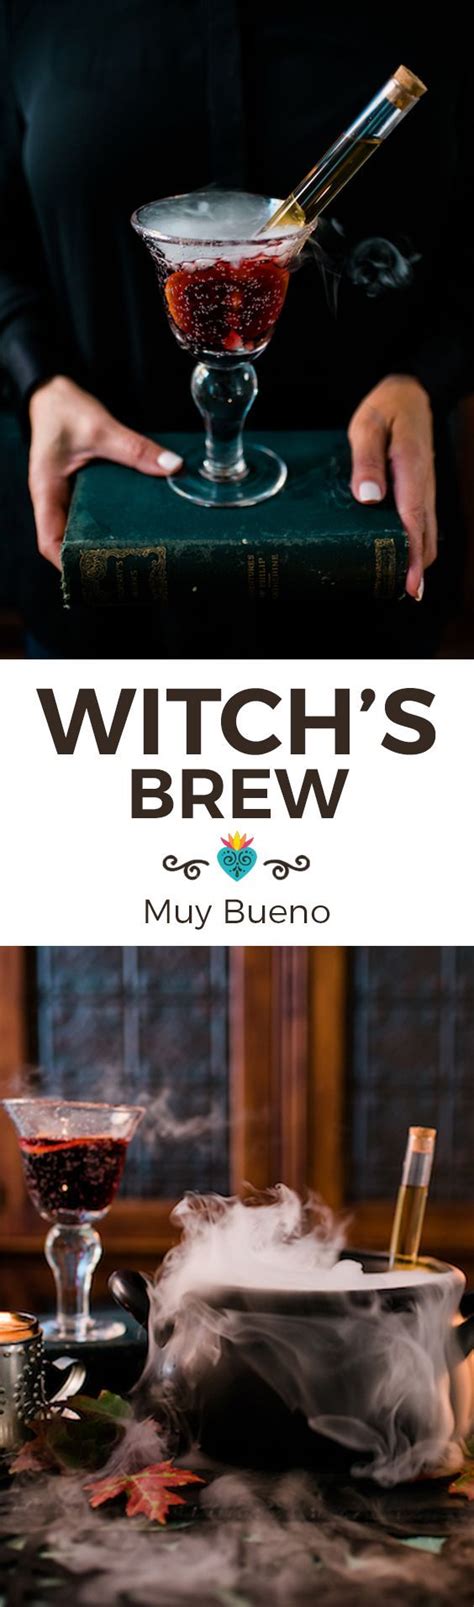 Magical sorceress concocting brew